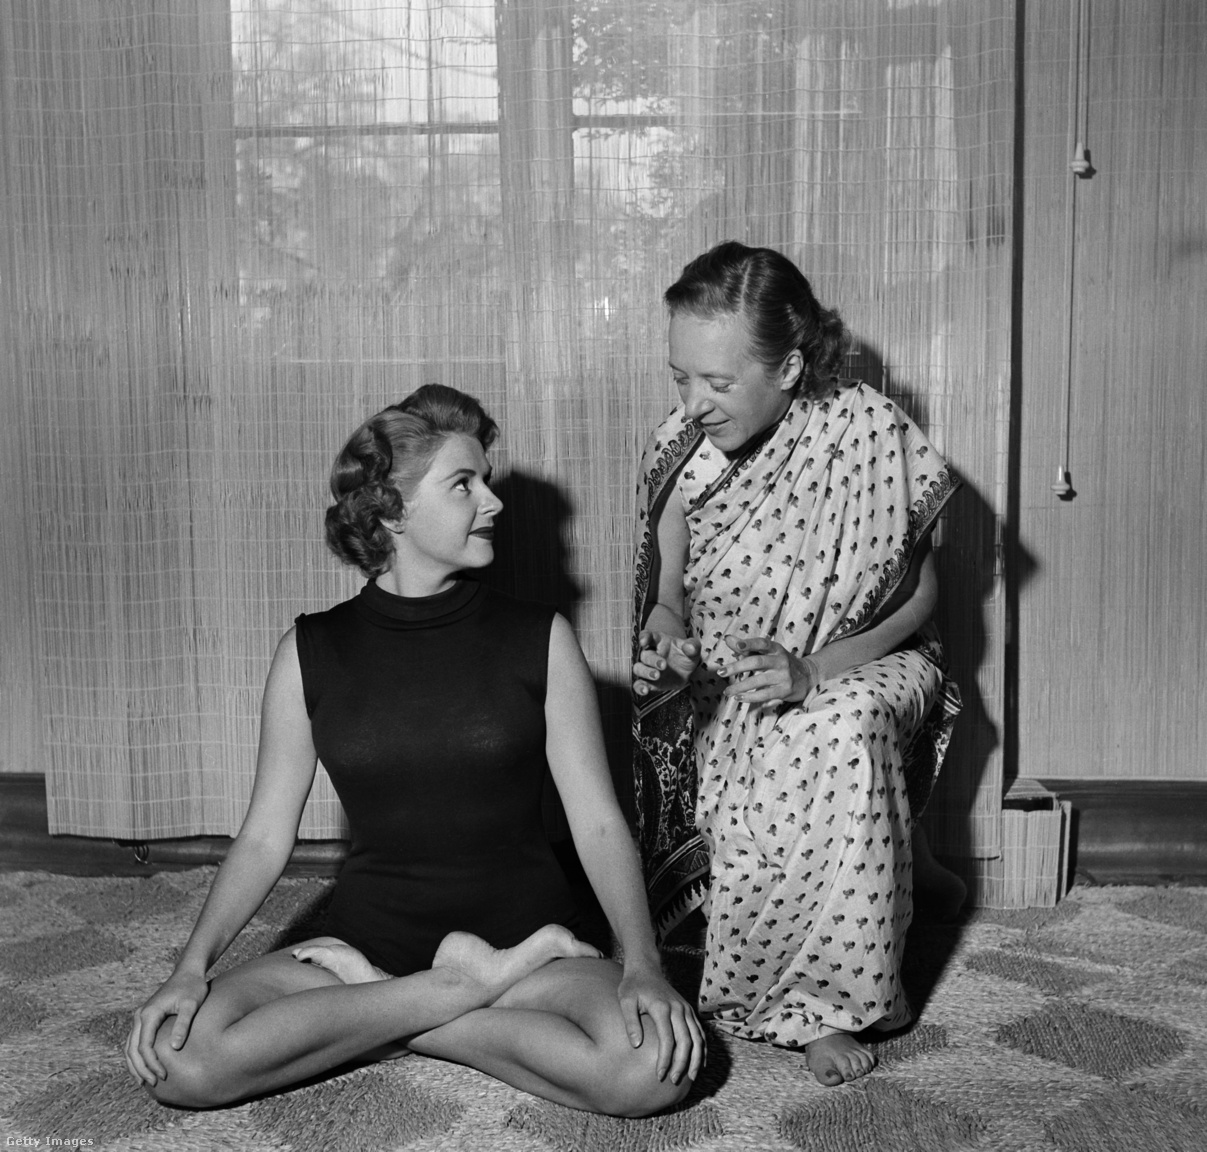 Egyesült Államok, Los Angeles, 1952 körül.   Indra Devi jógi oktatja egy tanítványát egy jógapozícióra a hollywoodi stúdiójában